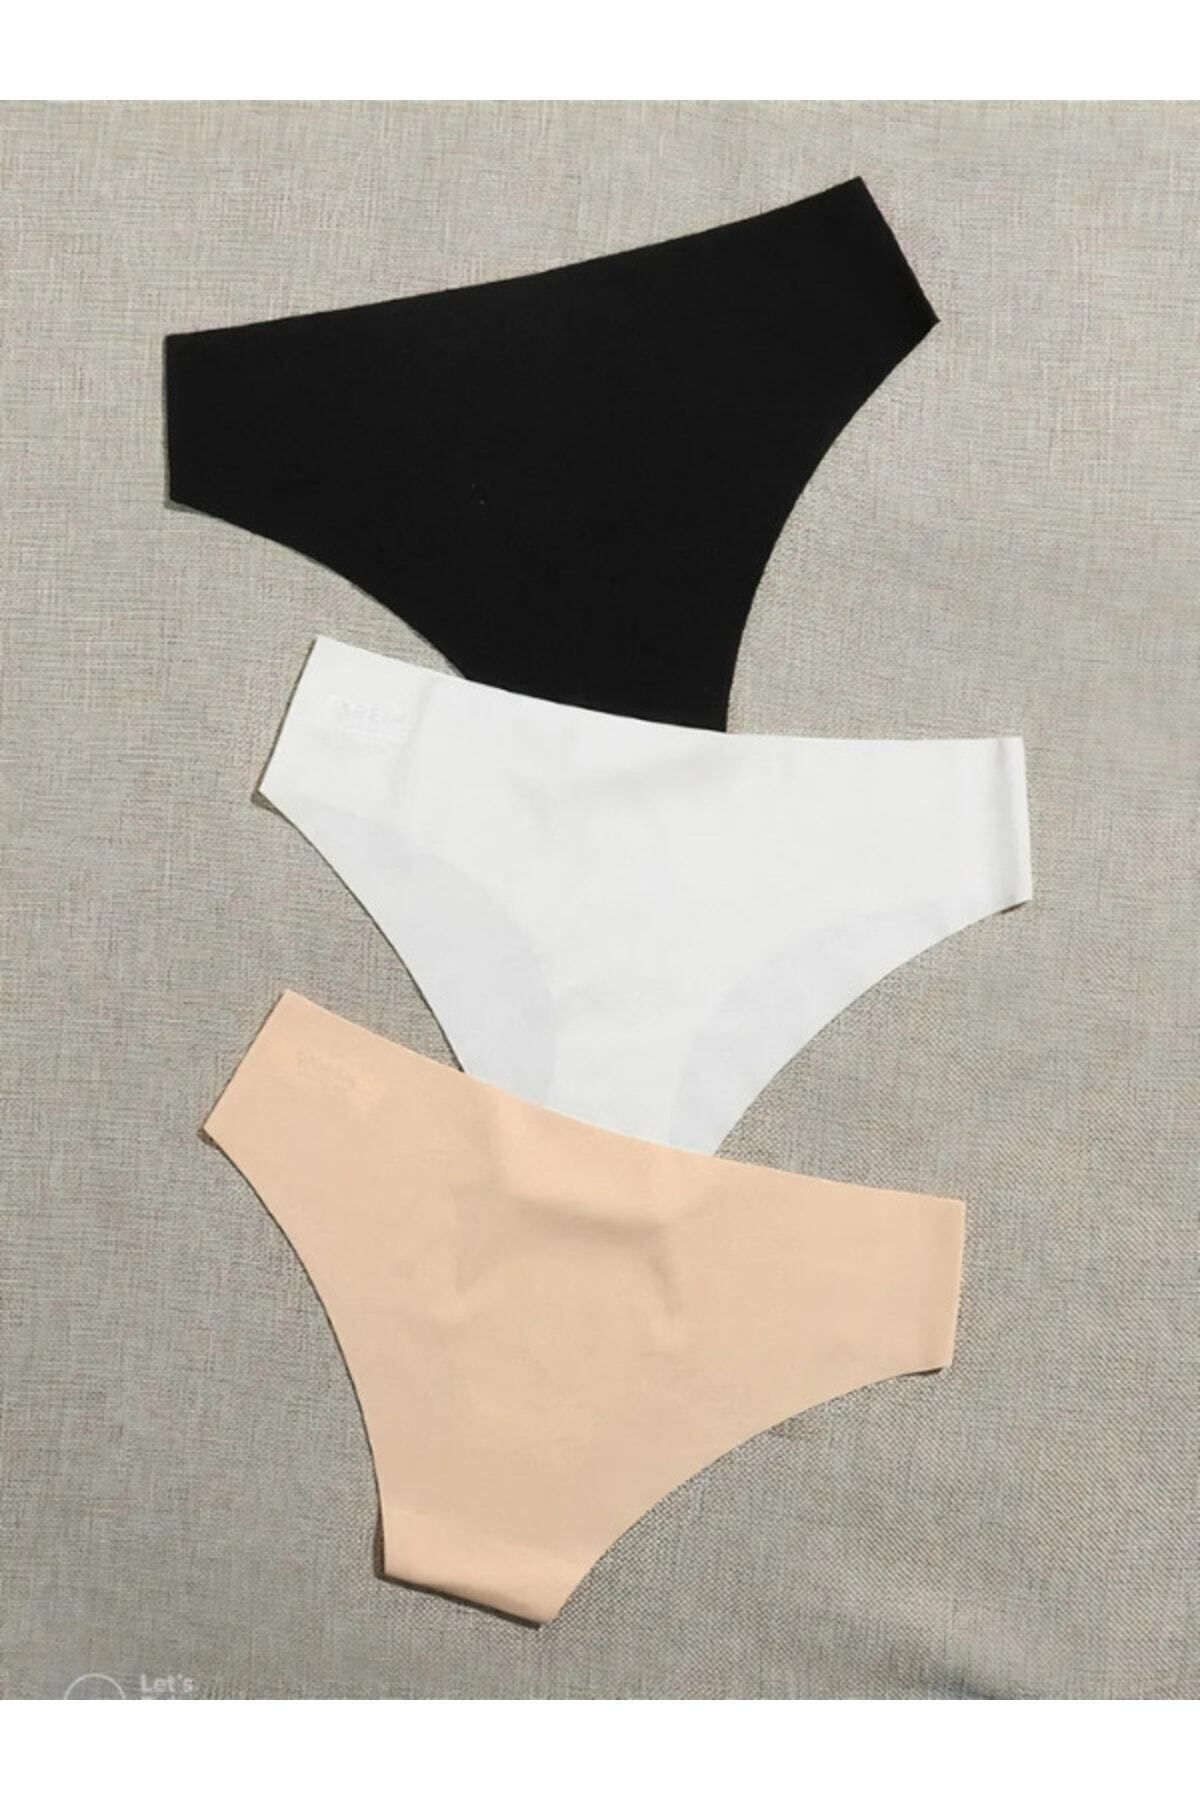 LIDEBAZE Kadın Lazer Kesim Dikişsiz Kilot iz Yapmayan Yumuşak Külot Mikro Kumaş Bikini Külot 3'lü Paket